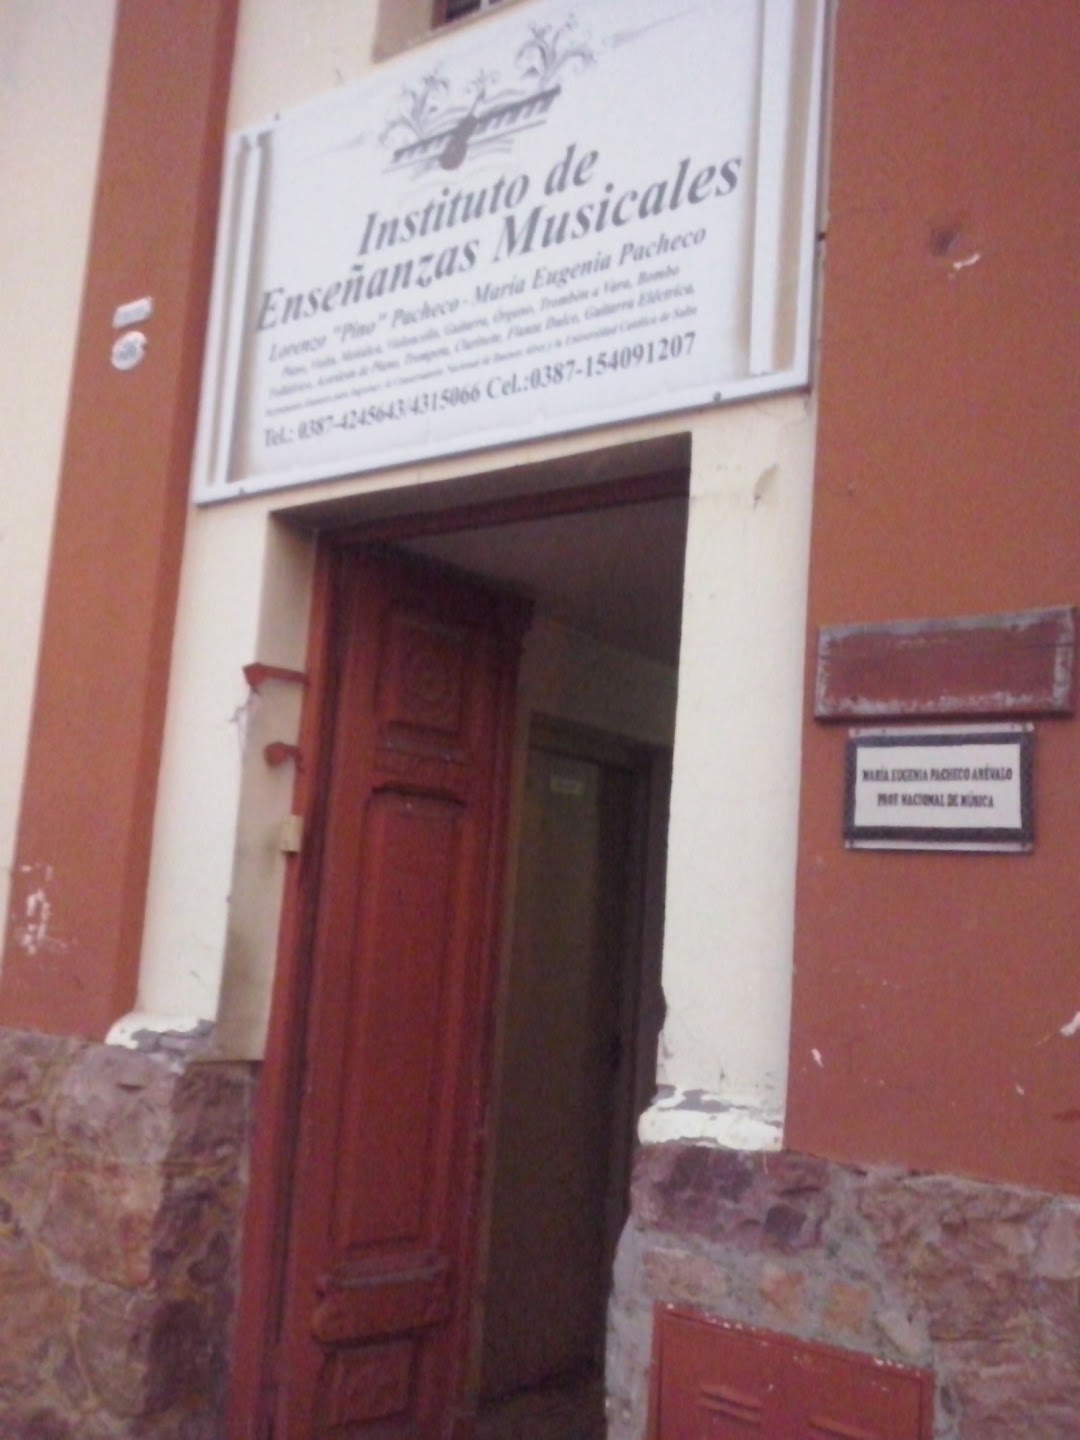 Instituto de Enseñanzas Musicales